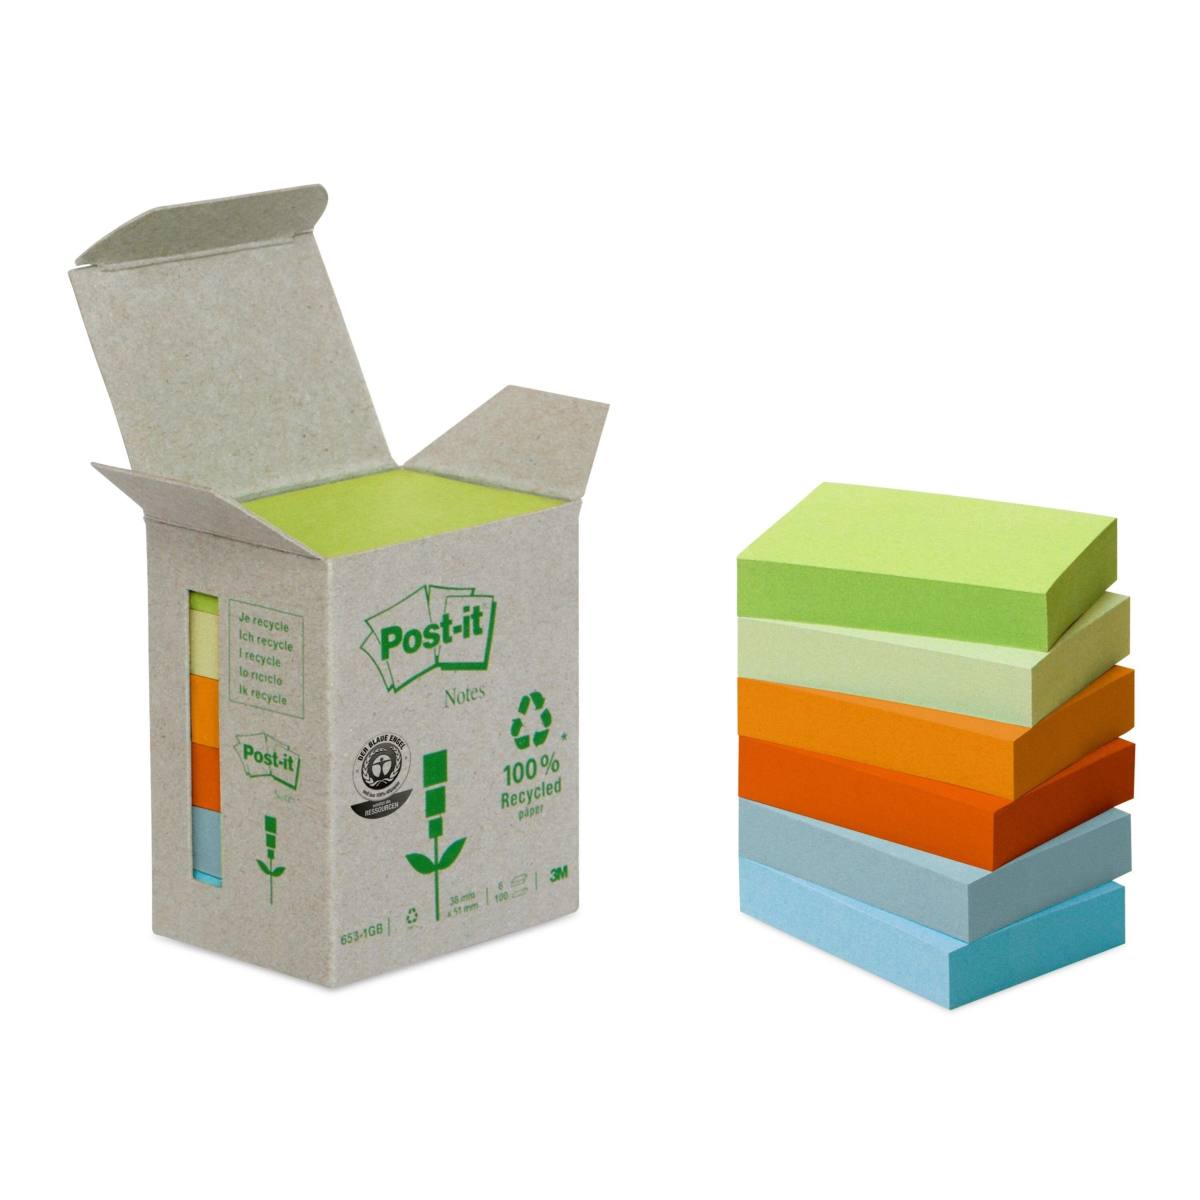 3M Post-it Recycling Notes 653-1GB, 51 mm x 38 mm, verschiedene Farben, 6 Blöcke à 100 Blatt